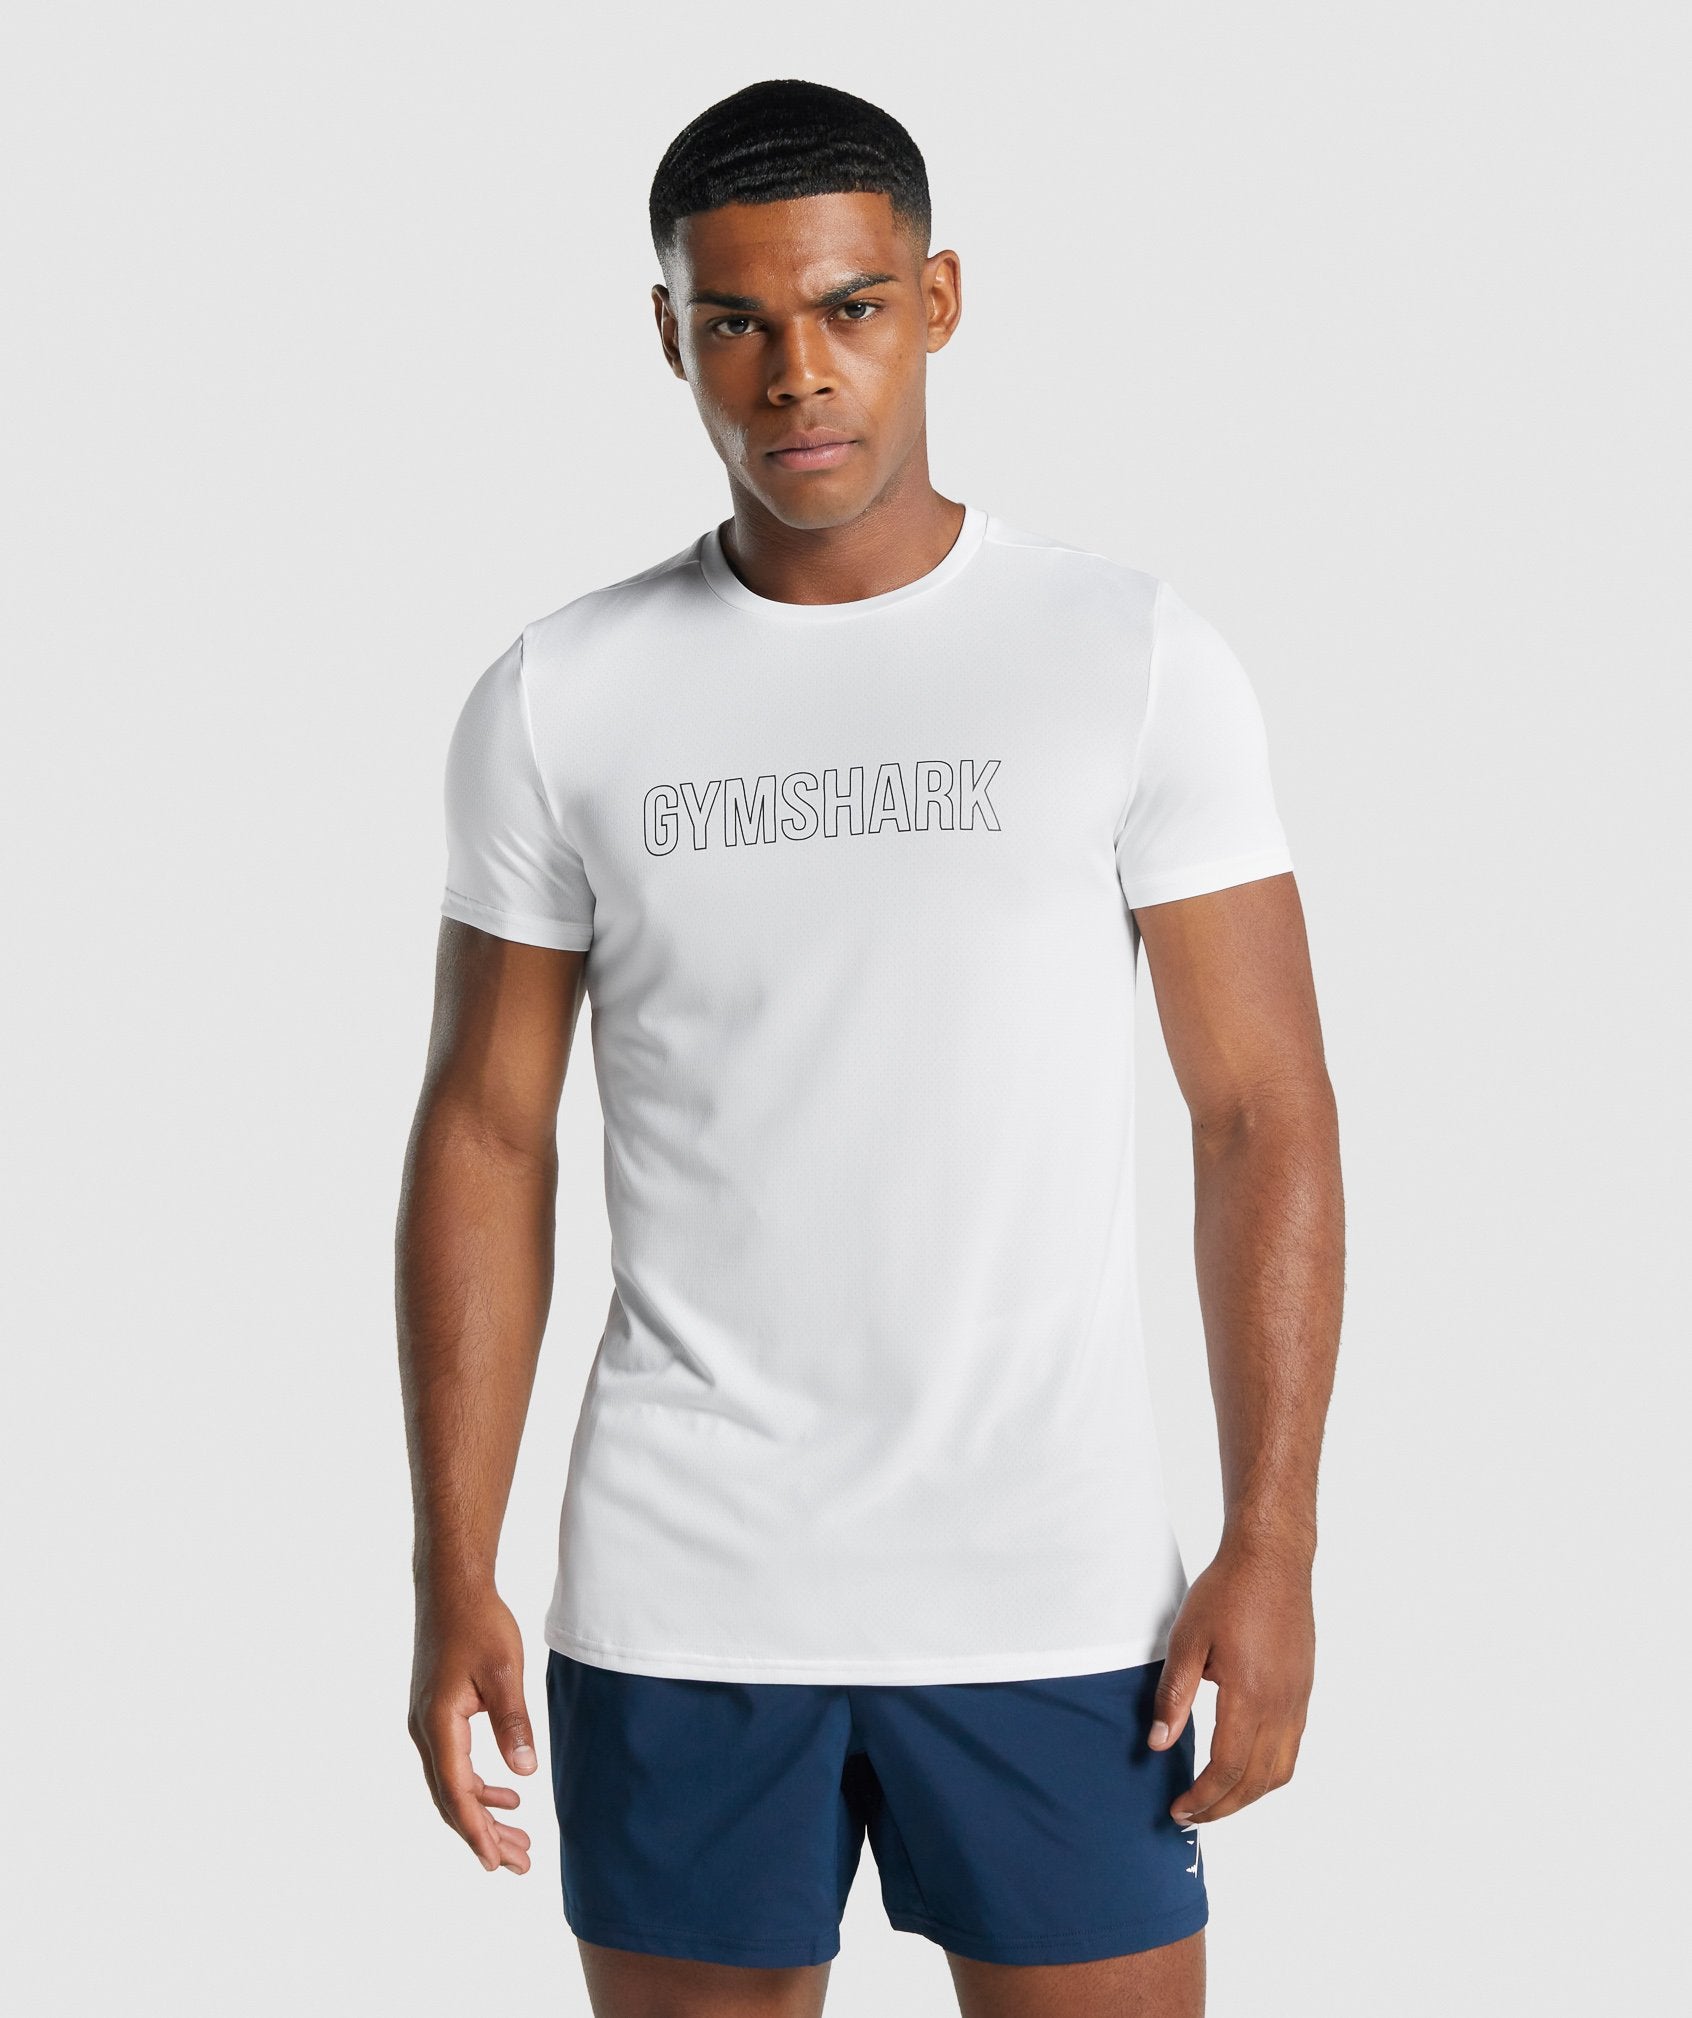 Gymshark Arrival Long Sleeve T-Shirt - White